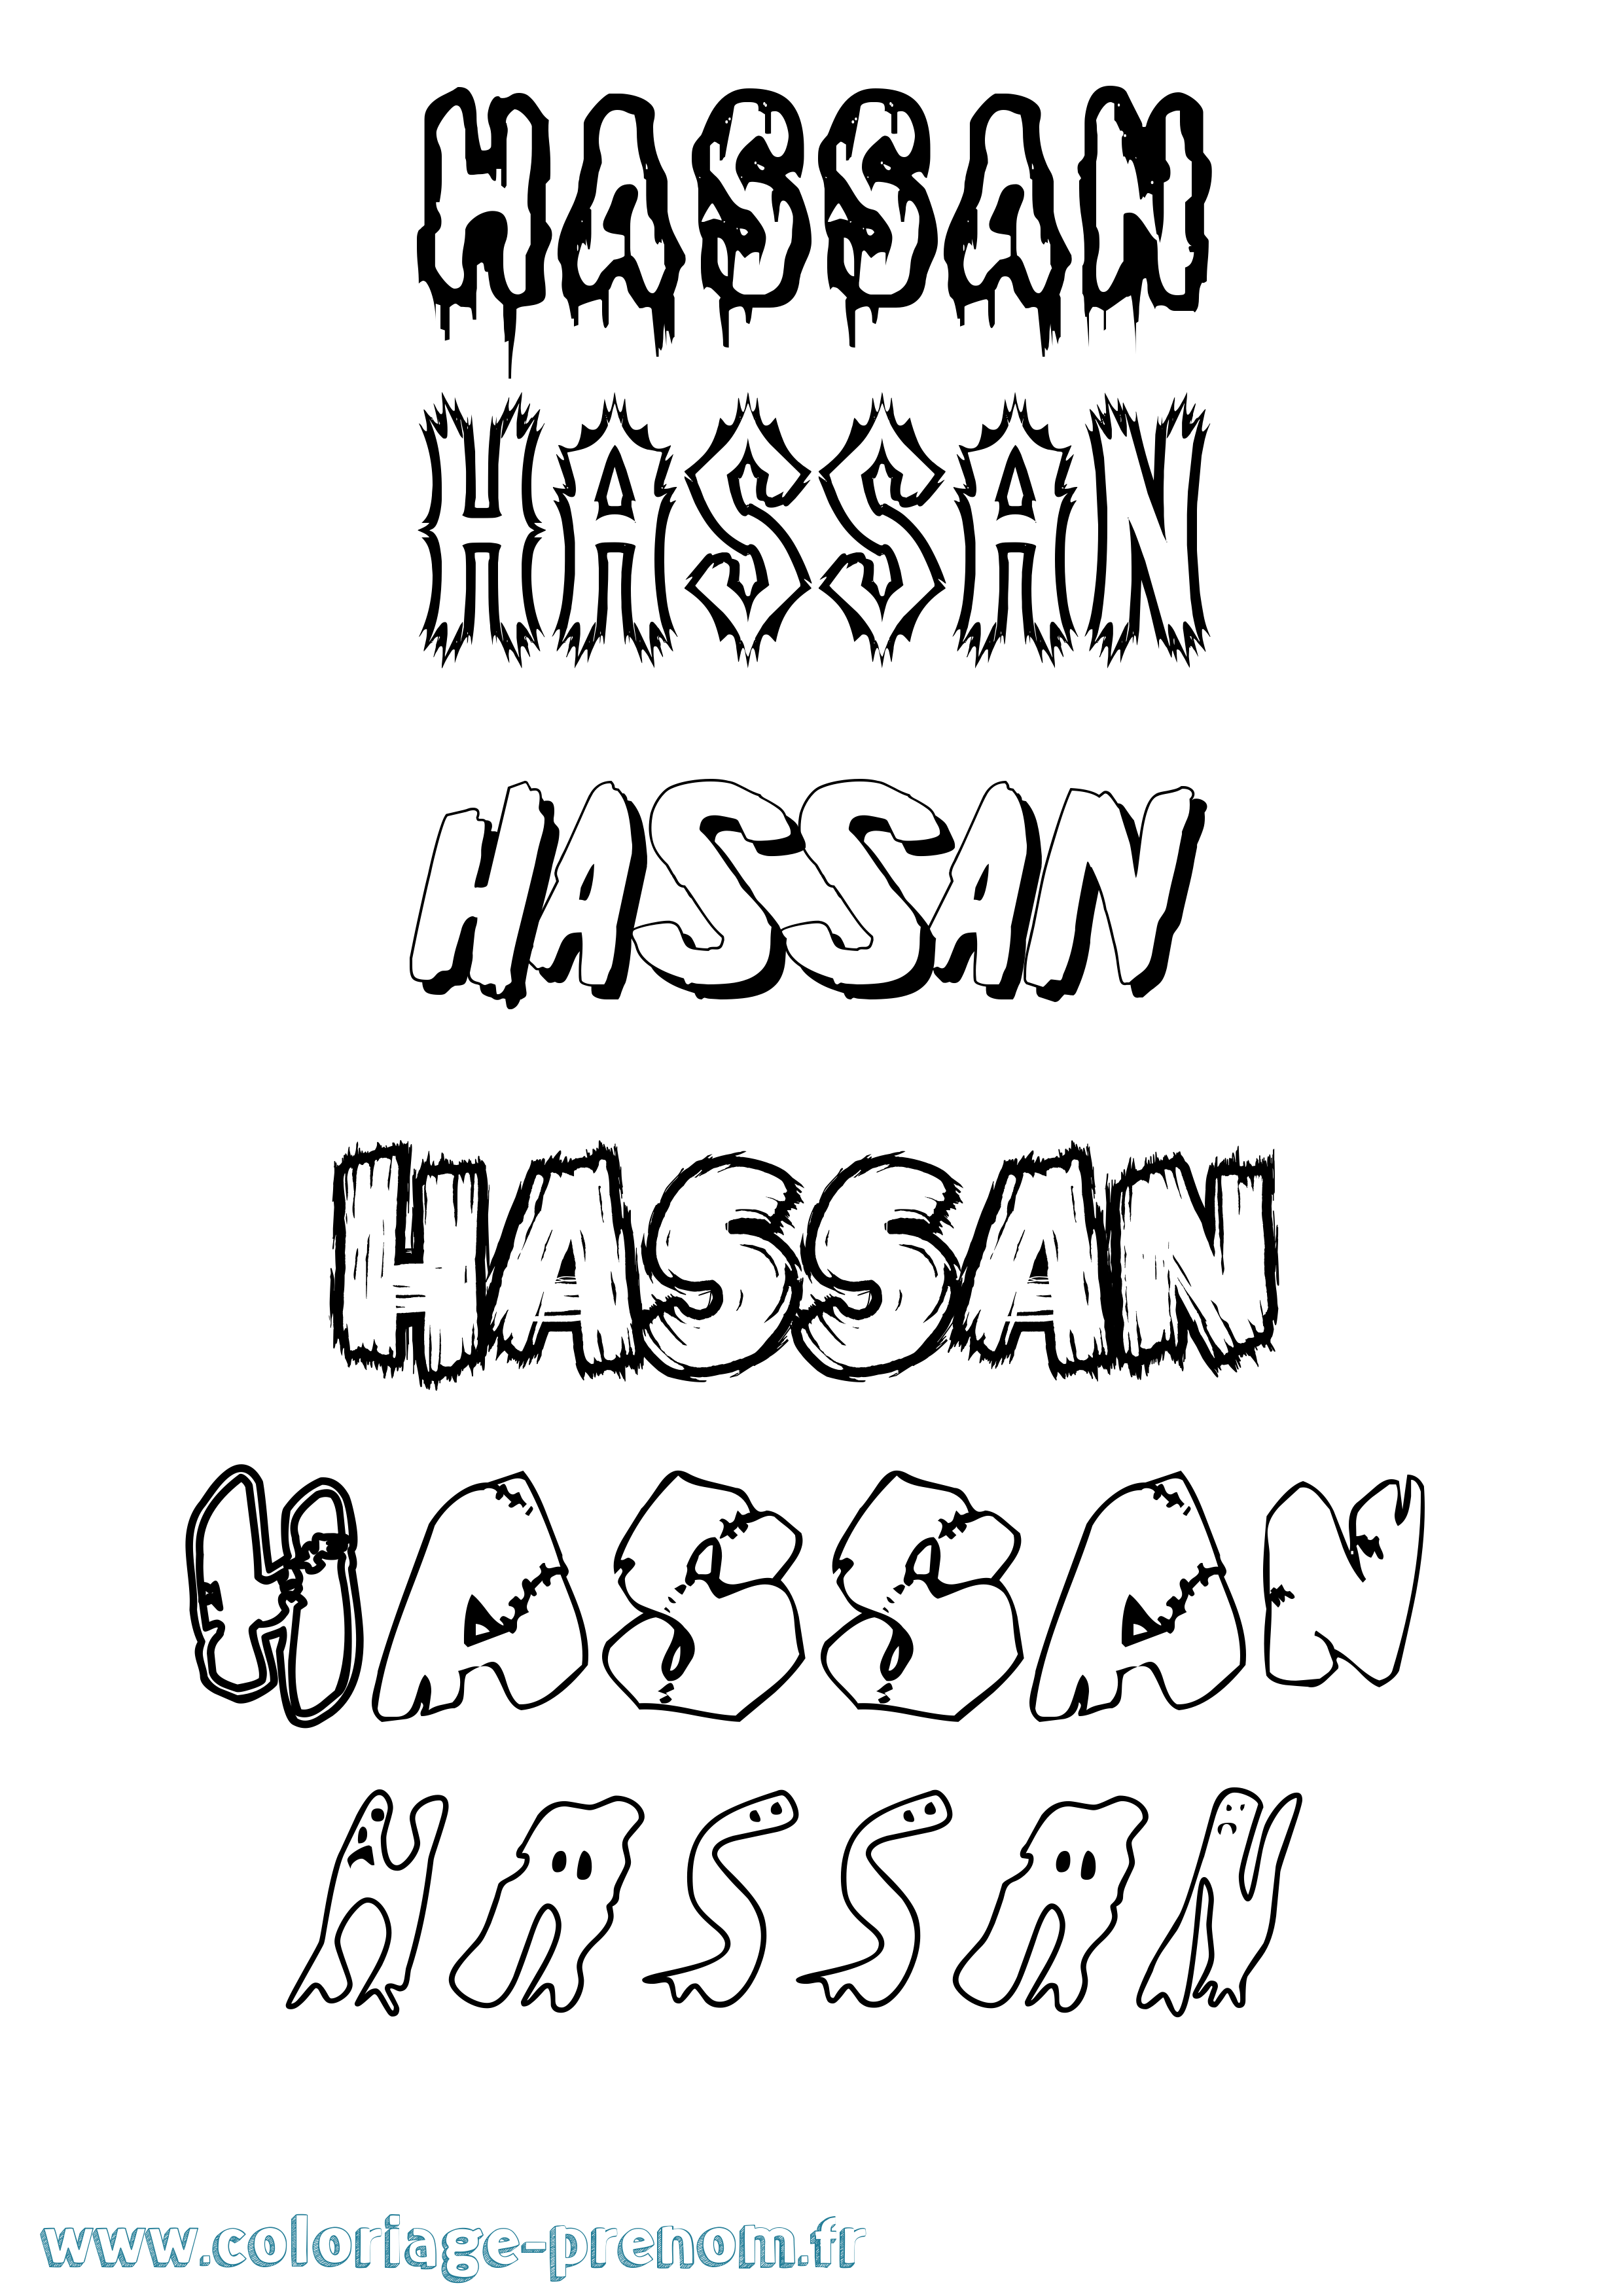 Coloriage prénom Hassan Frisson